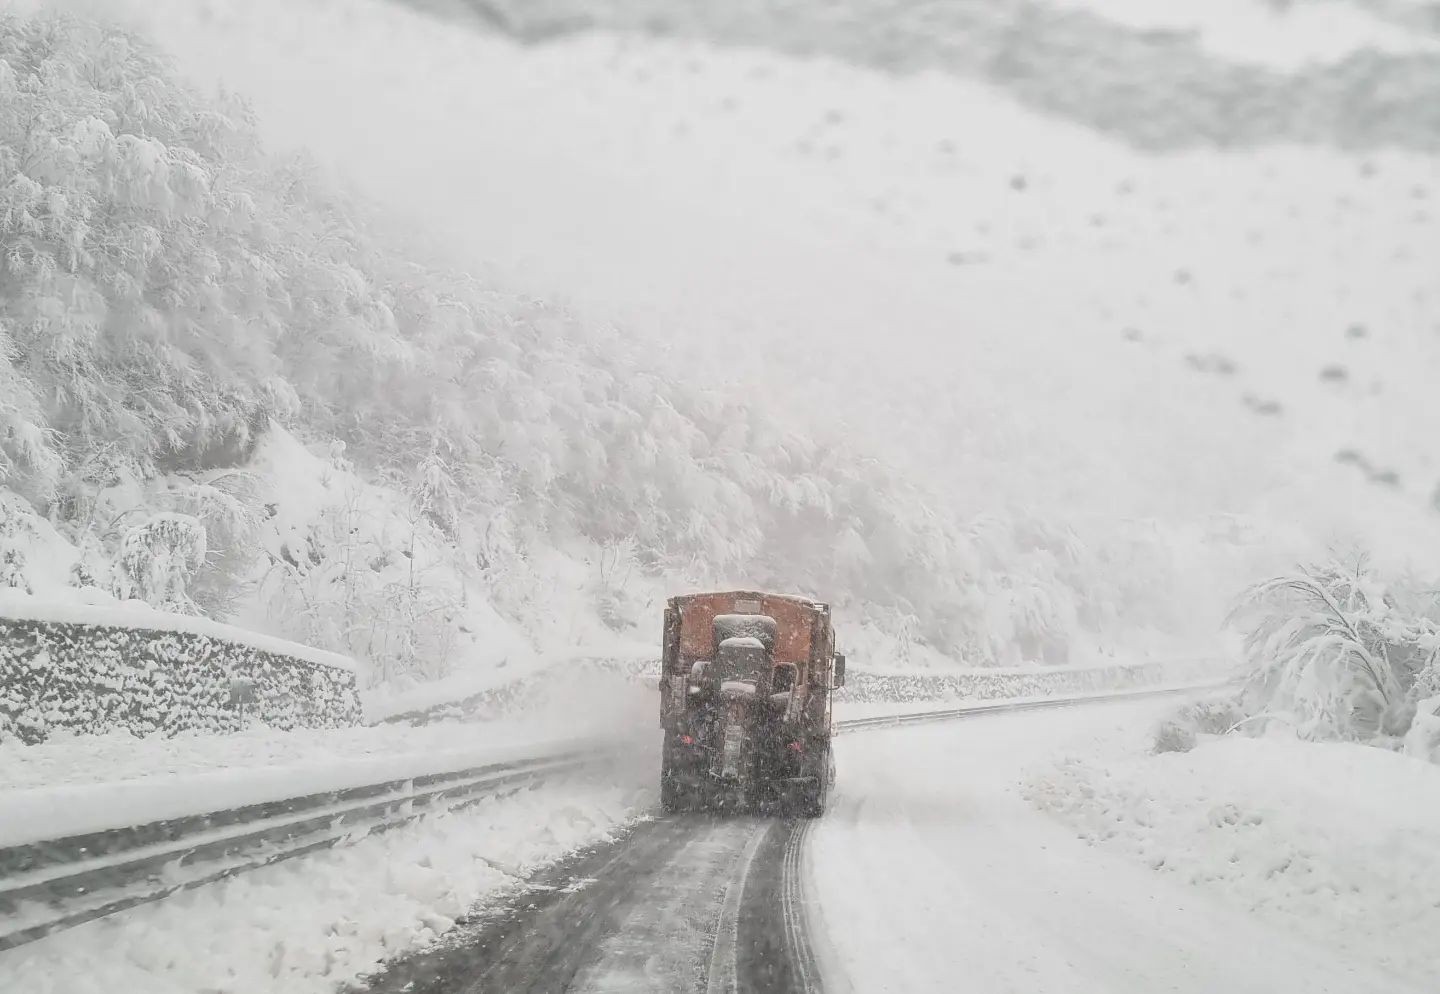 Zonguldak’ta karla mücadele sürüyor #zonguldak